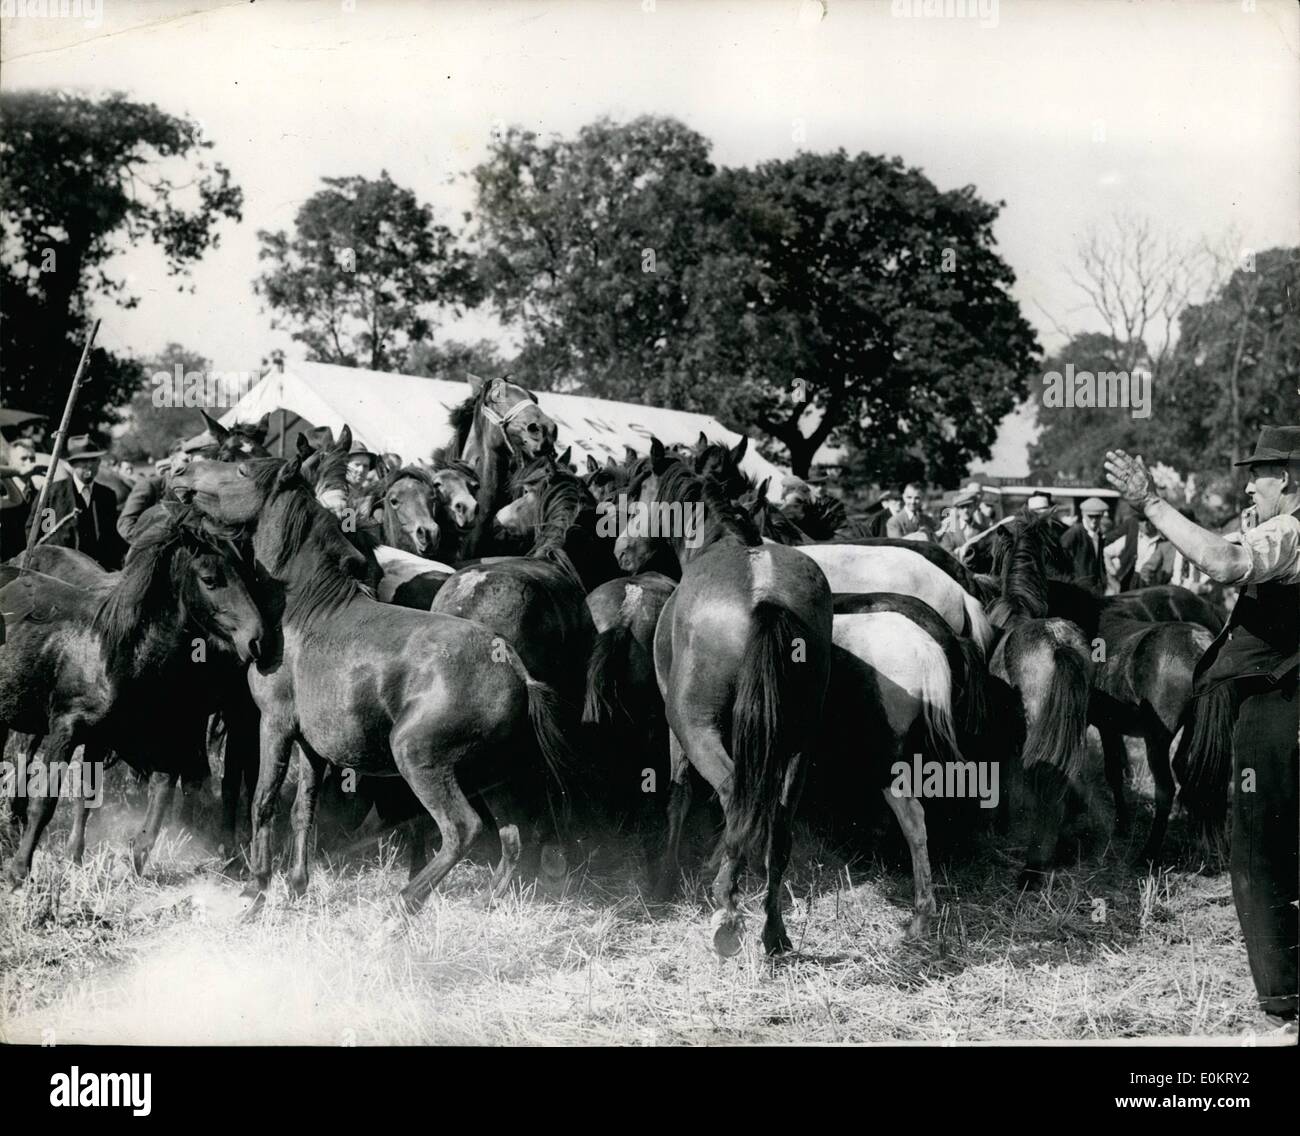 Sept. 05, 1949 - 09.05.49 die berühmte Barnet-Messe öffnet, die Aufrundung der Pferde und Ponys. Pferde und Ponys für Barnet-Messe, die heute eröffnet zusammen getrieben wird. Die Messe wurde in der Regierungszeit von Heinrich II. von Charter gegründet. Stockfoto